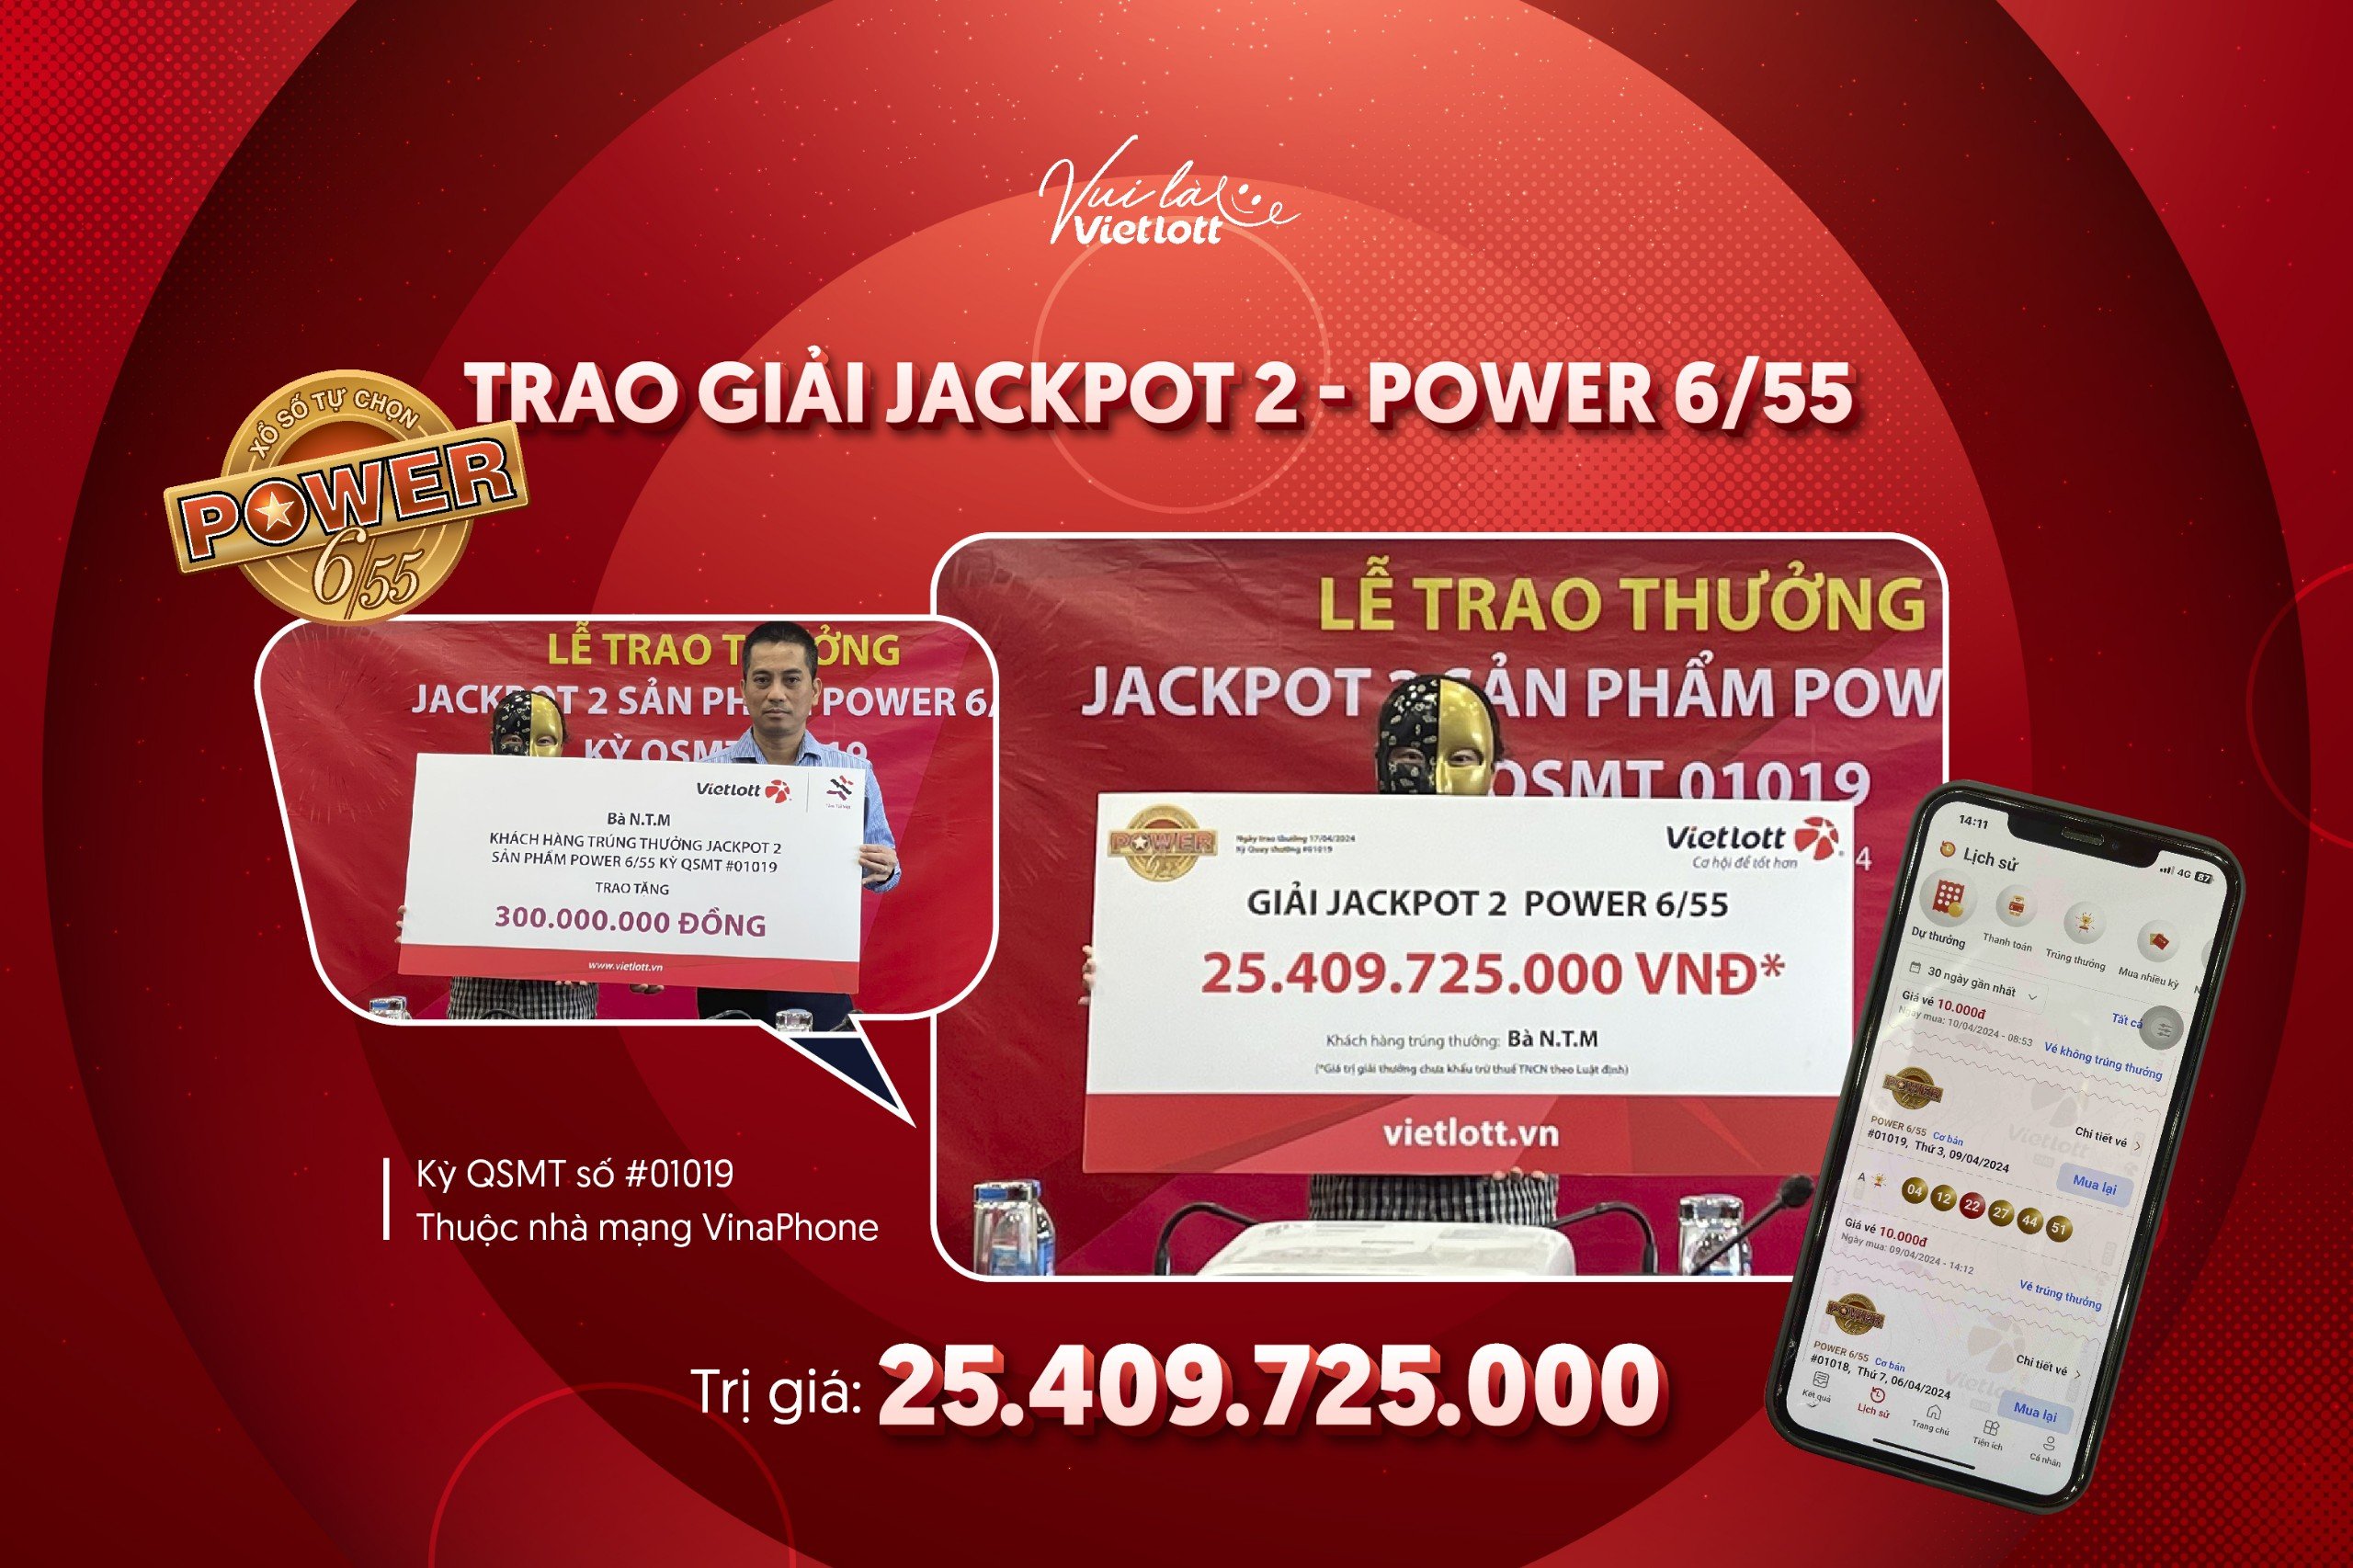 A Kien Giang woman wins Jackpot 2 Power 6/55 worth over 25 billion VND